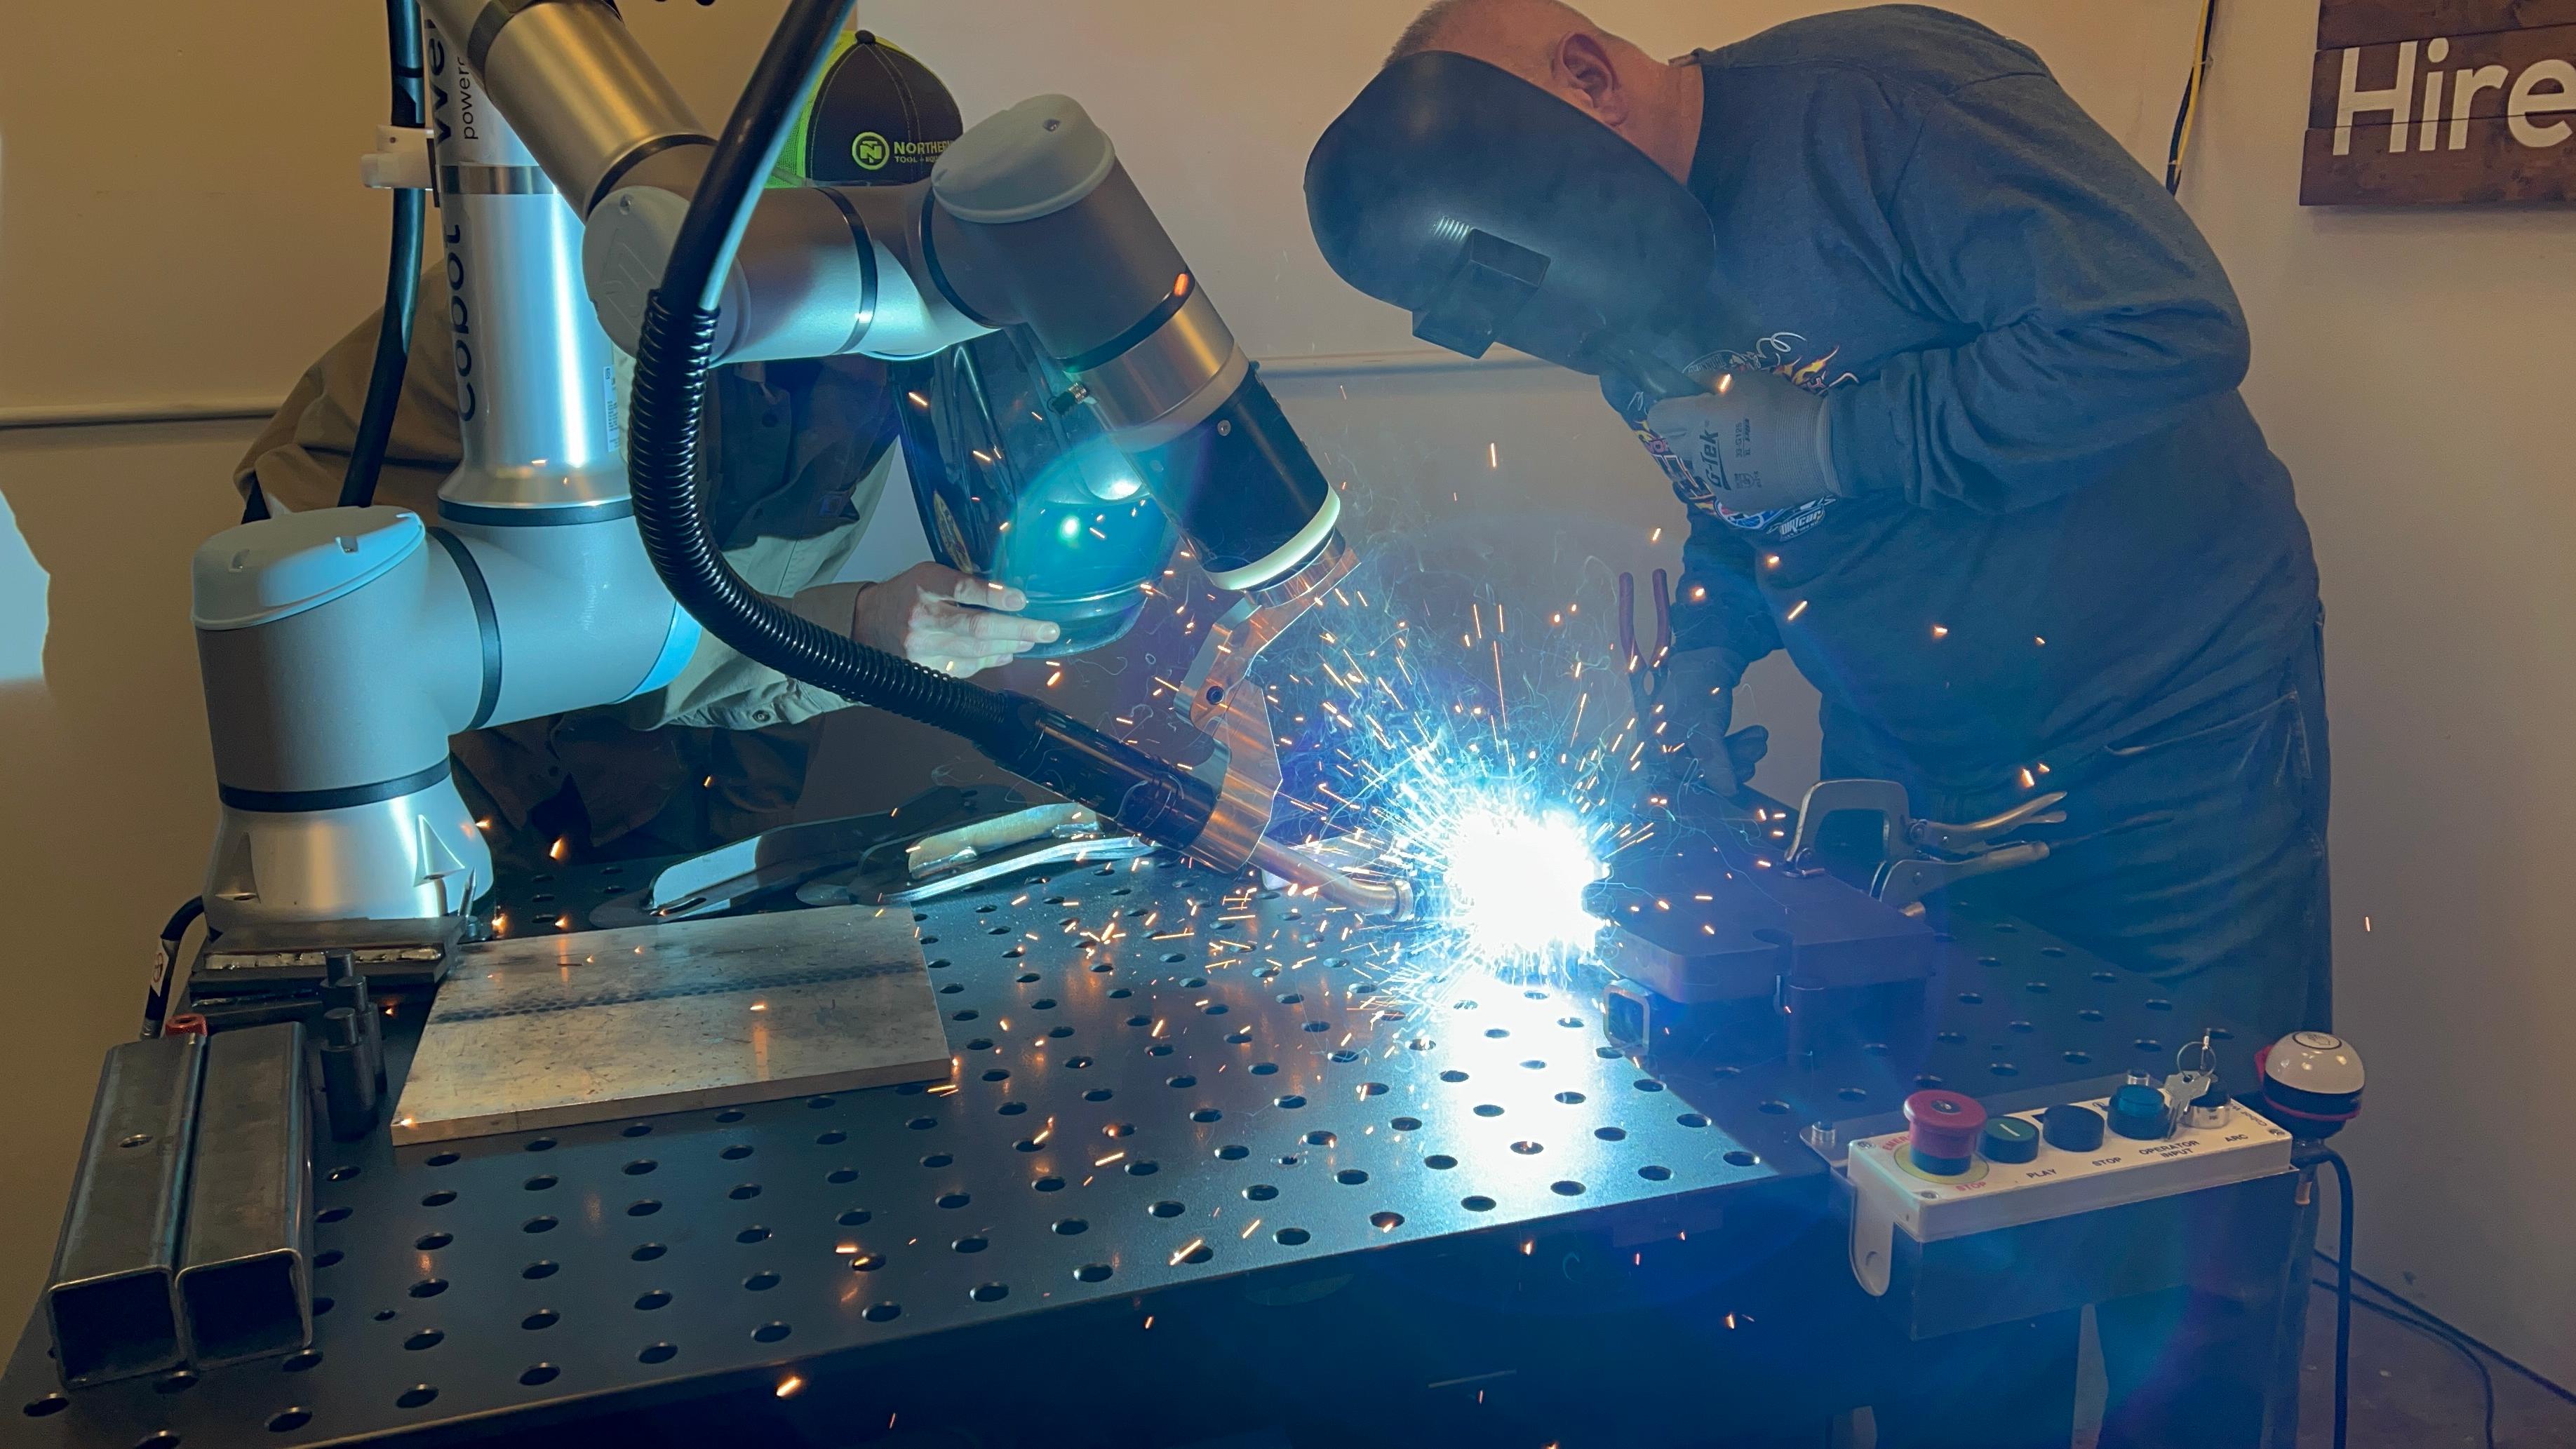 welding robots can help hire welders